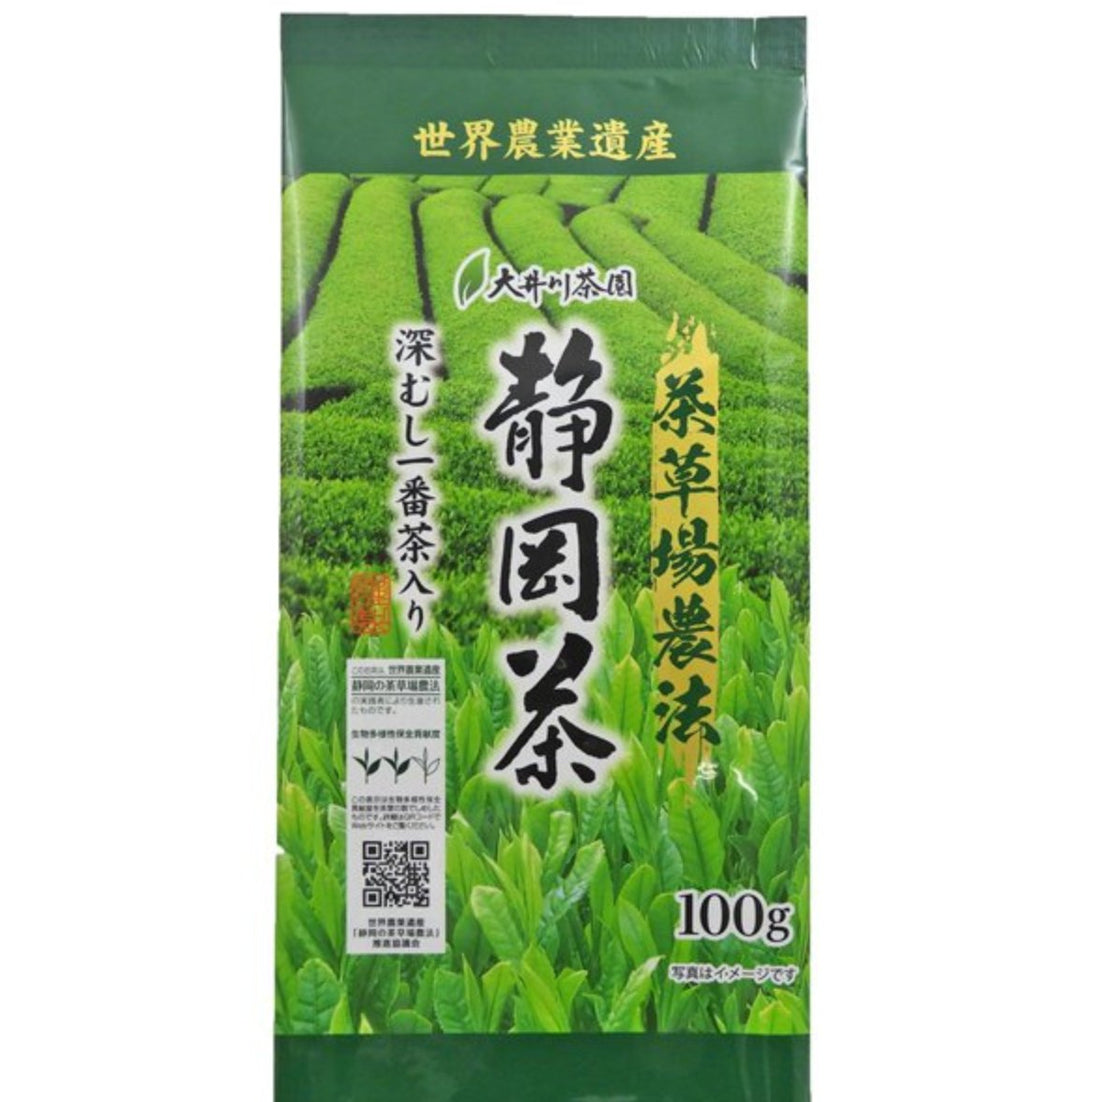 Oigawa Tea Garden Barley Shizuoka tea produced by Chagusaba Farming 100g - NihonMura